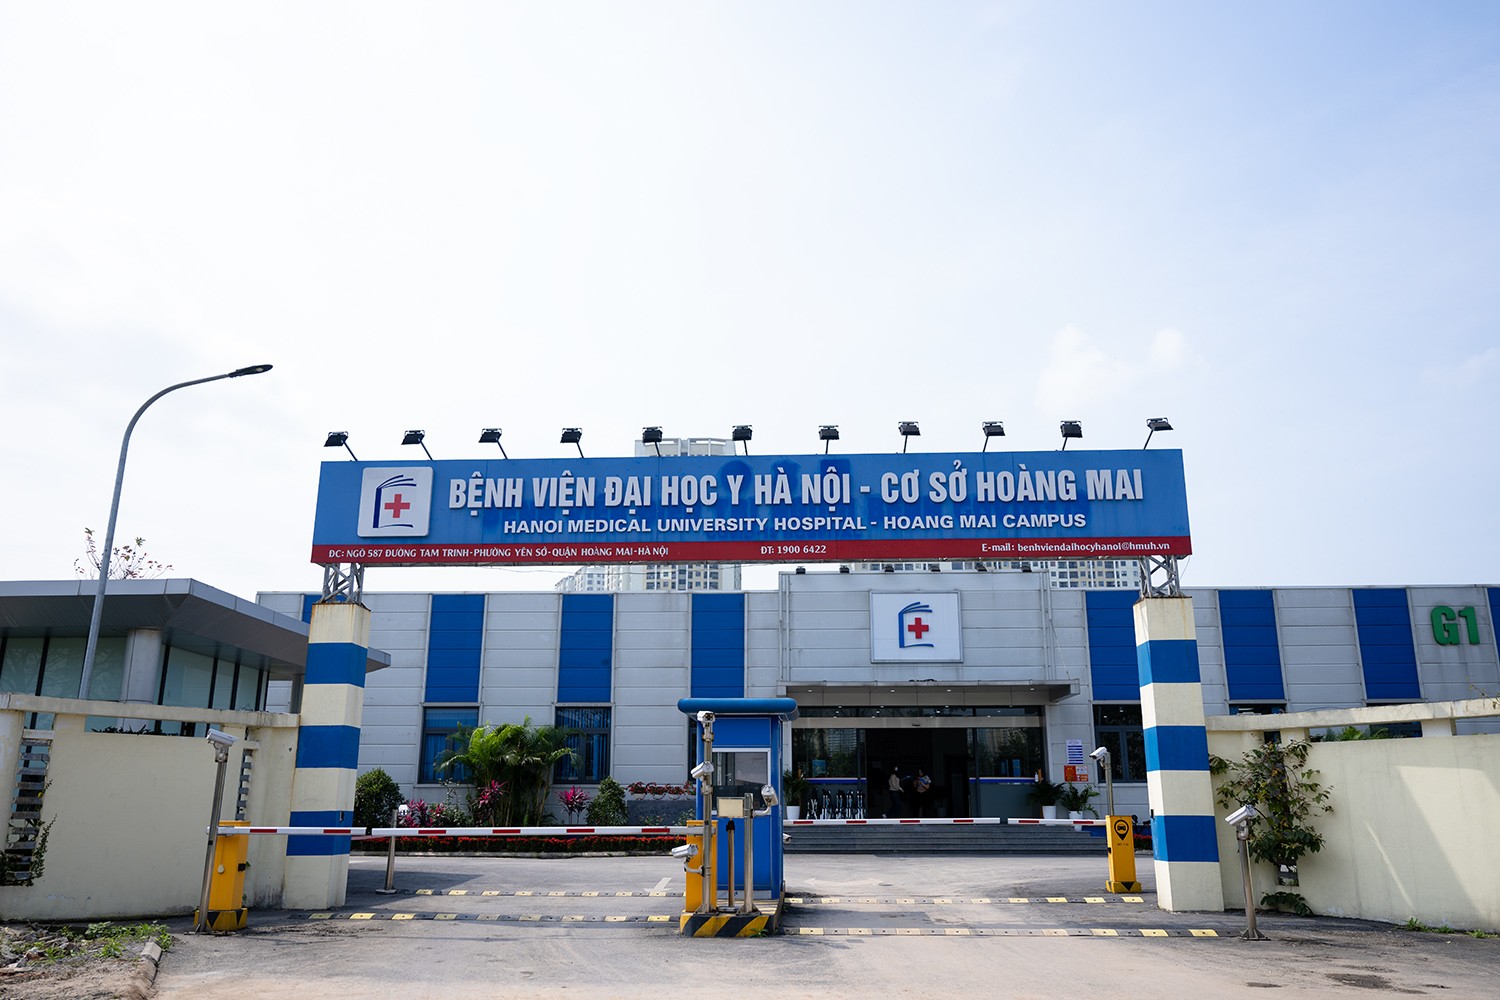 Bệnh viện Đại học Y Hà Nội cơ sở Hoàng Mai là bệnh viện dã chiến được sử dụng trong đợt phòng, chống dịch COVID-19 của Hà Nội.